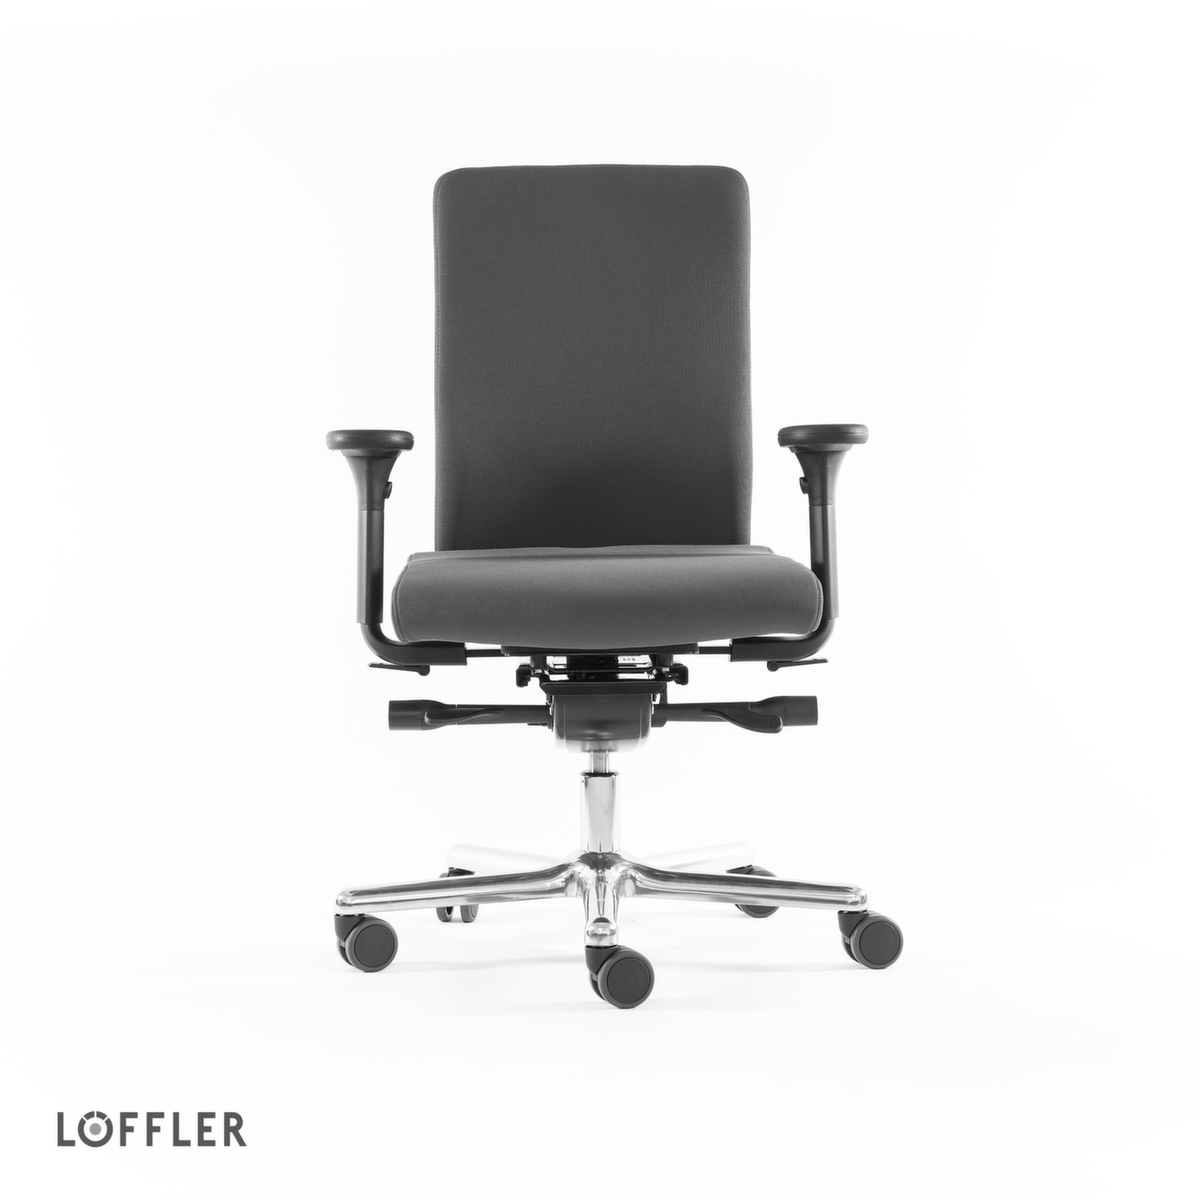 Löffler Bureaustoel met visco-elastische zitting, grijs  ZOOM